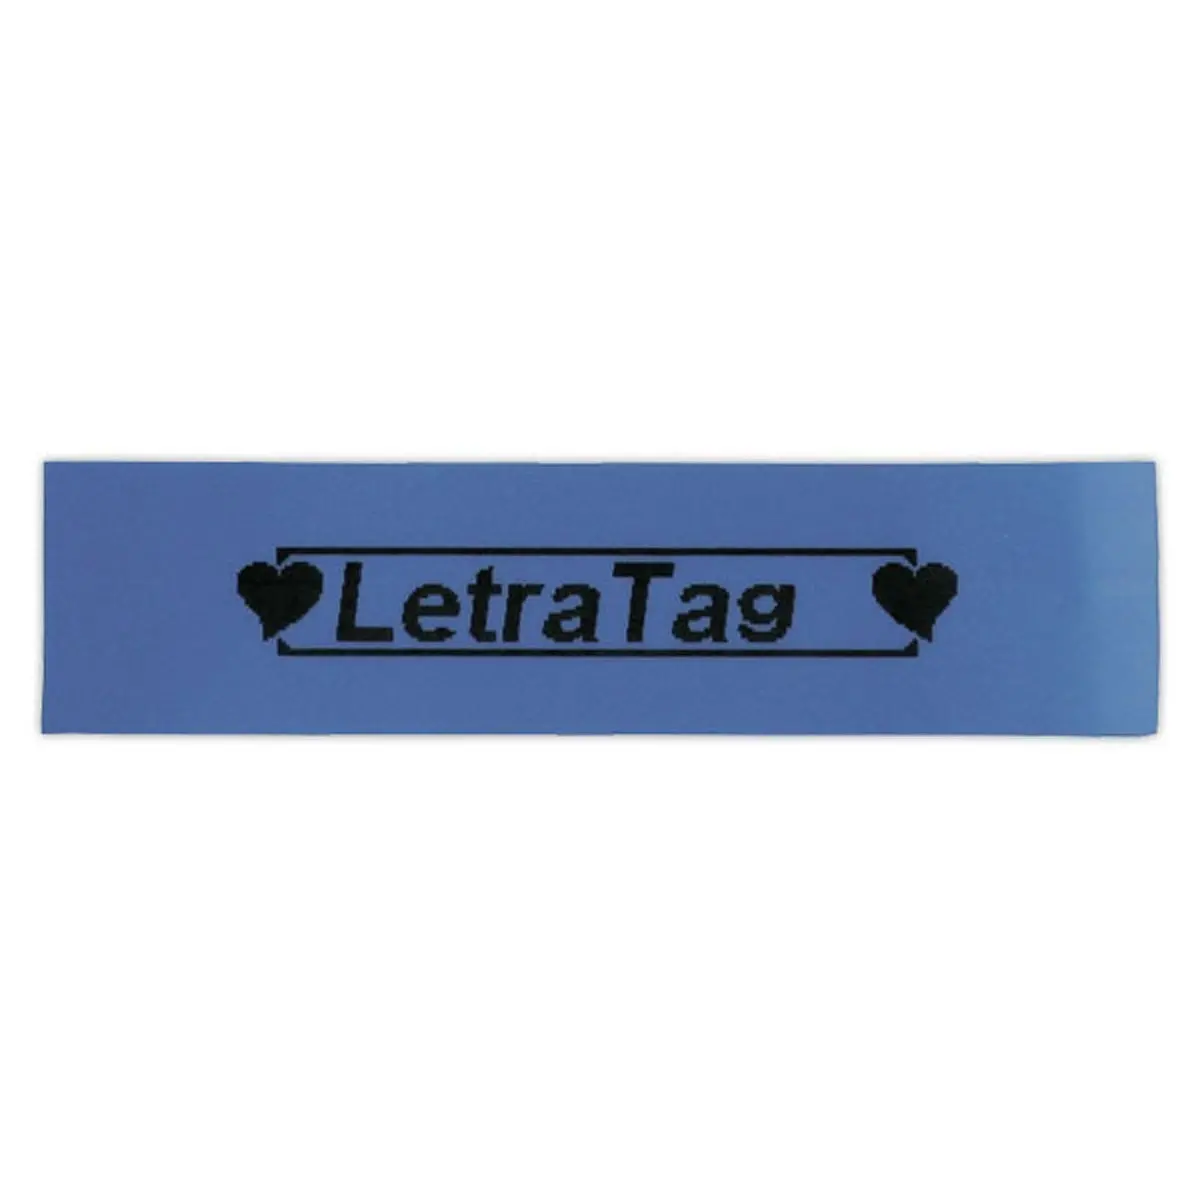 Ruban plastique Letratag - 12 mm - texte noir sur fond bleu photo du produit